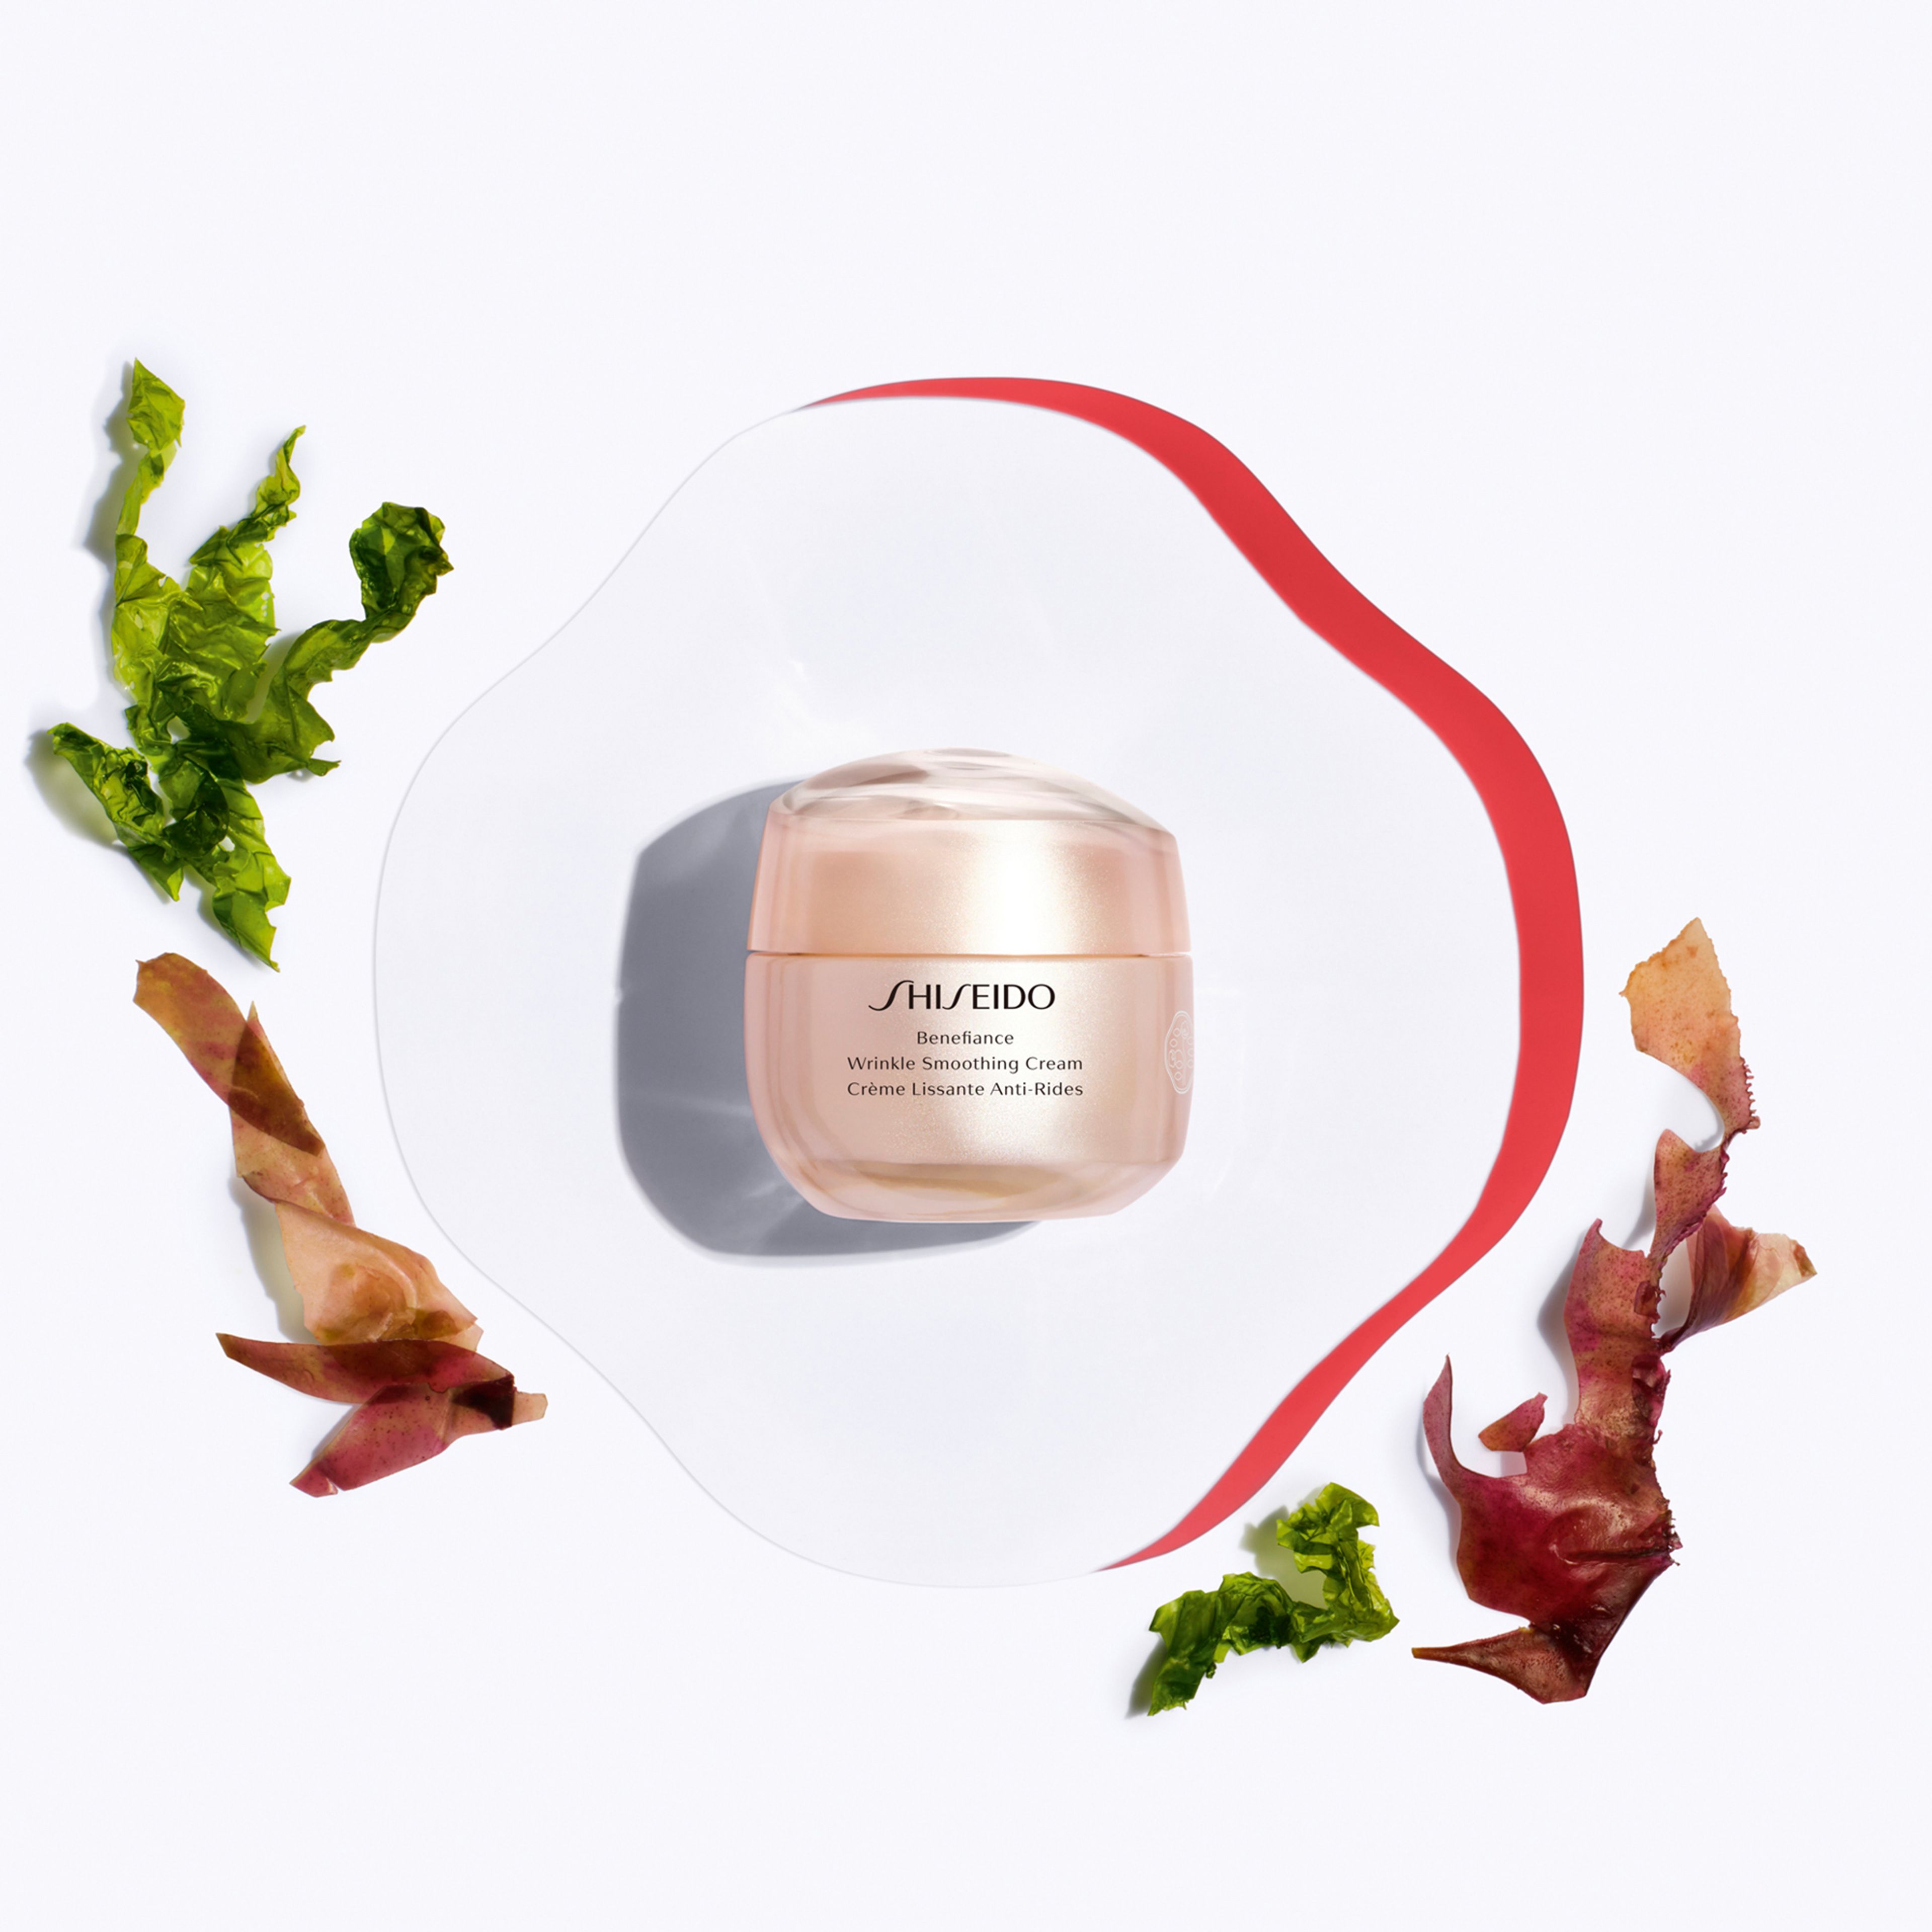 Shiseido Wrinkle Smoothing Cream 2